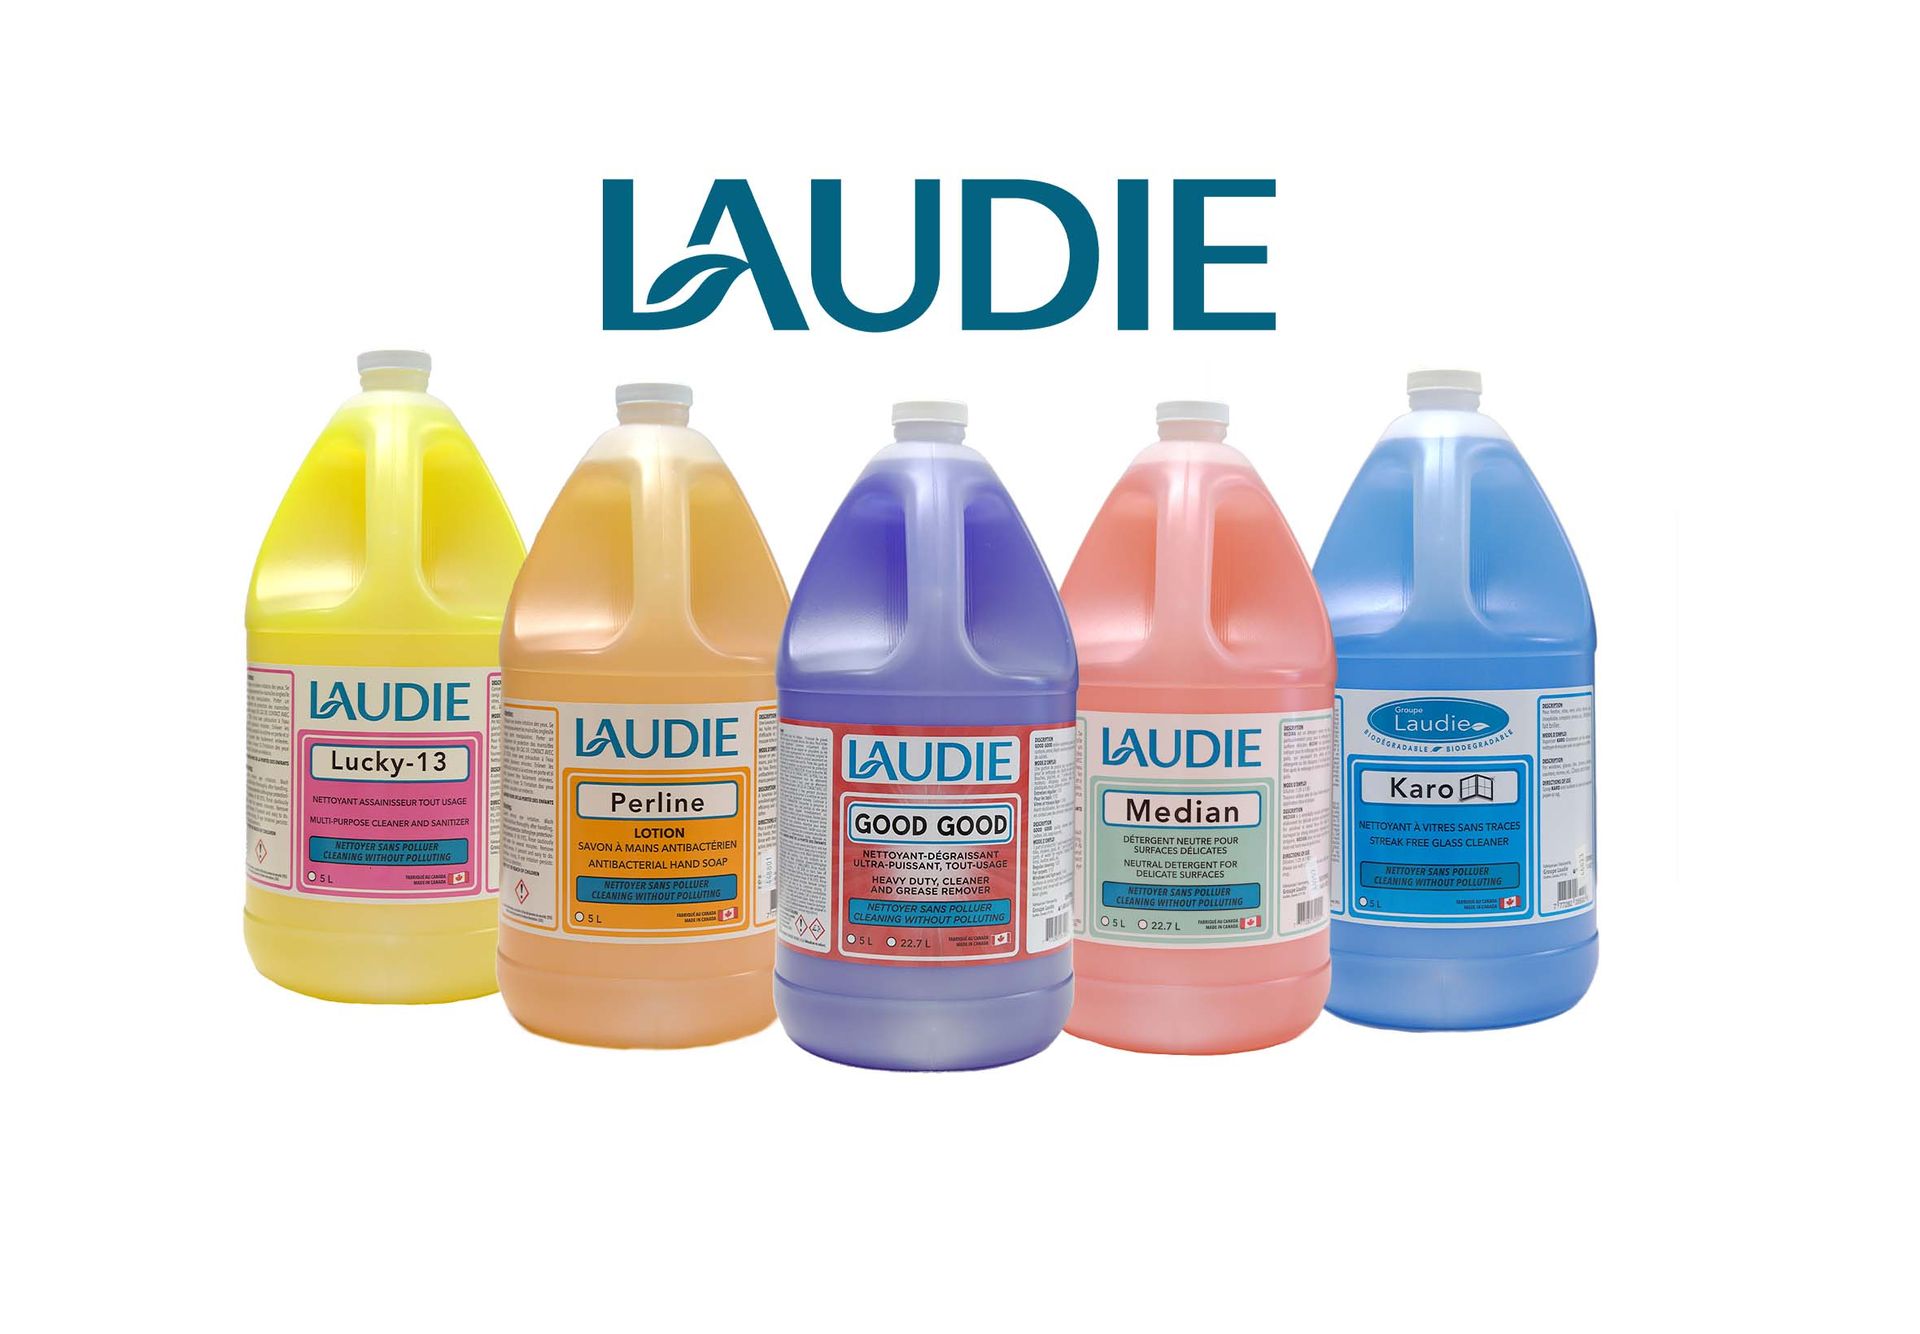 Brand: Laudie